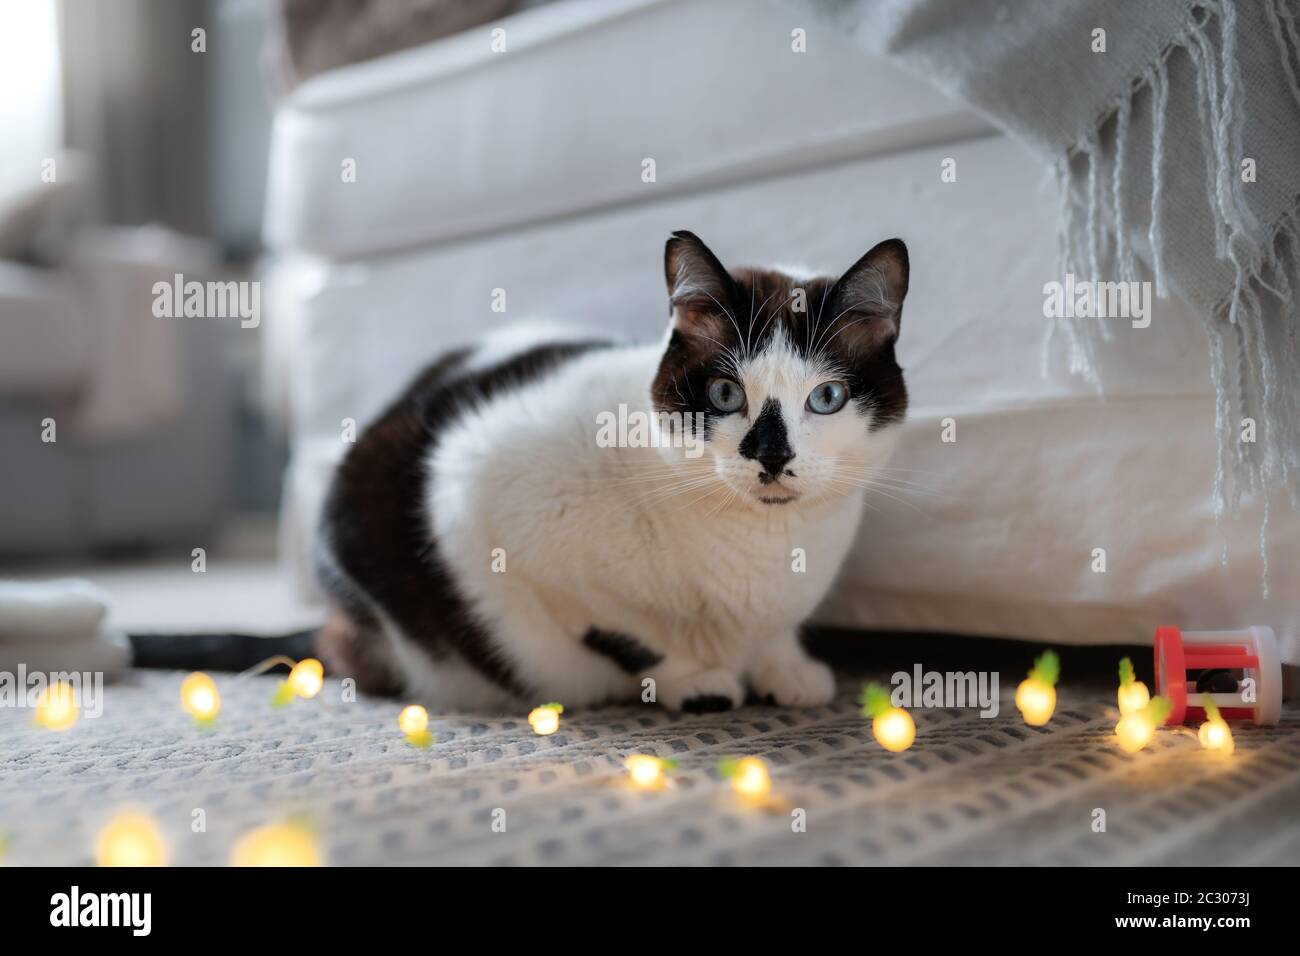 gatto bianco e nero con gli occhi blu stesi su un tappeto, guarda la fotocamera Foto Stock